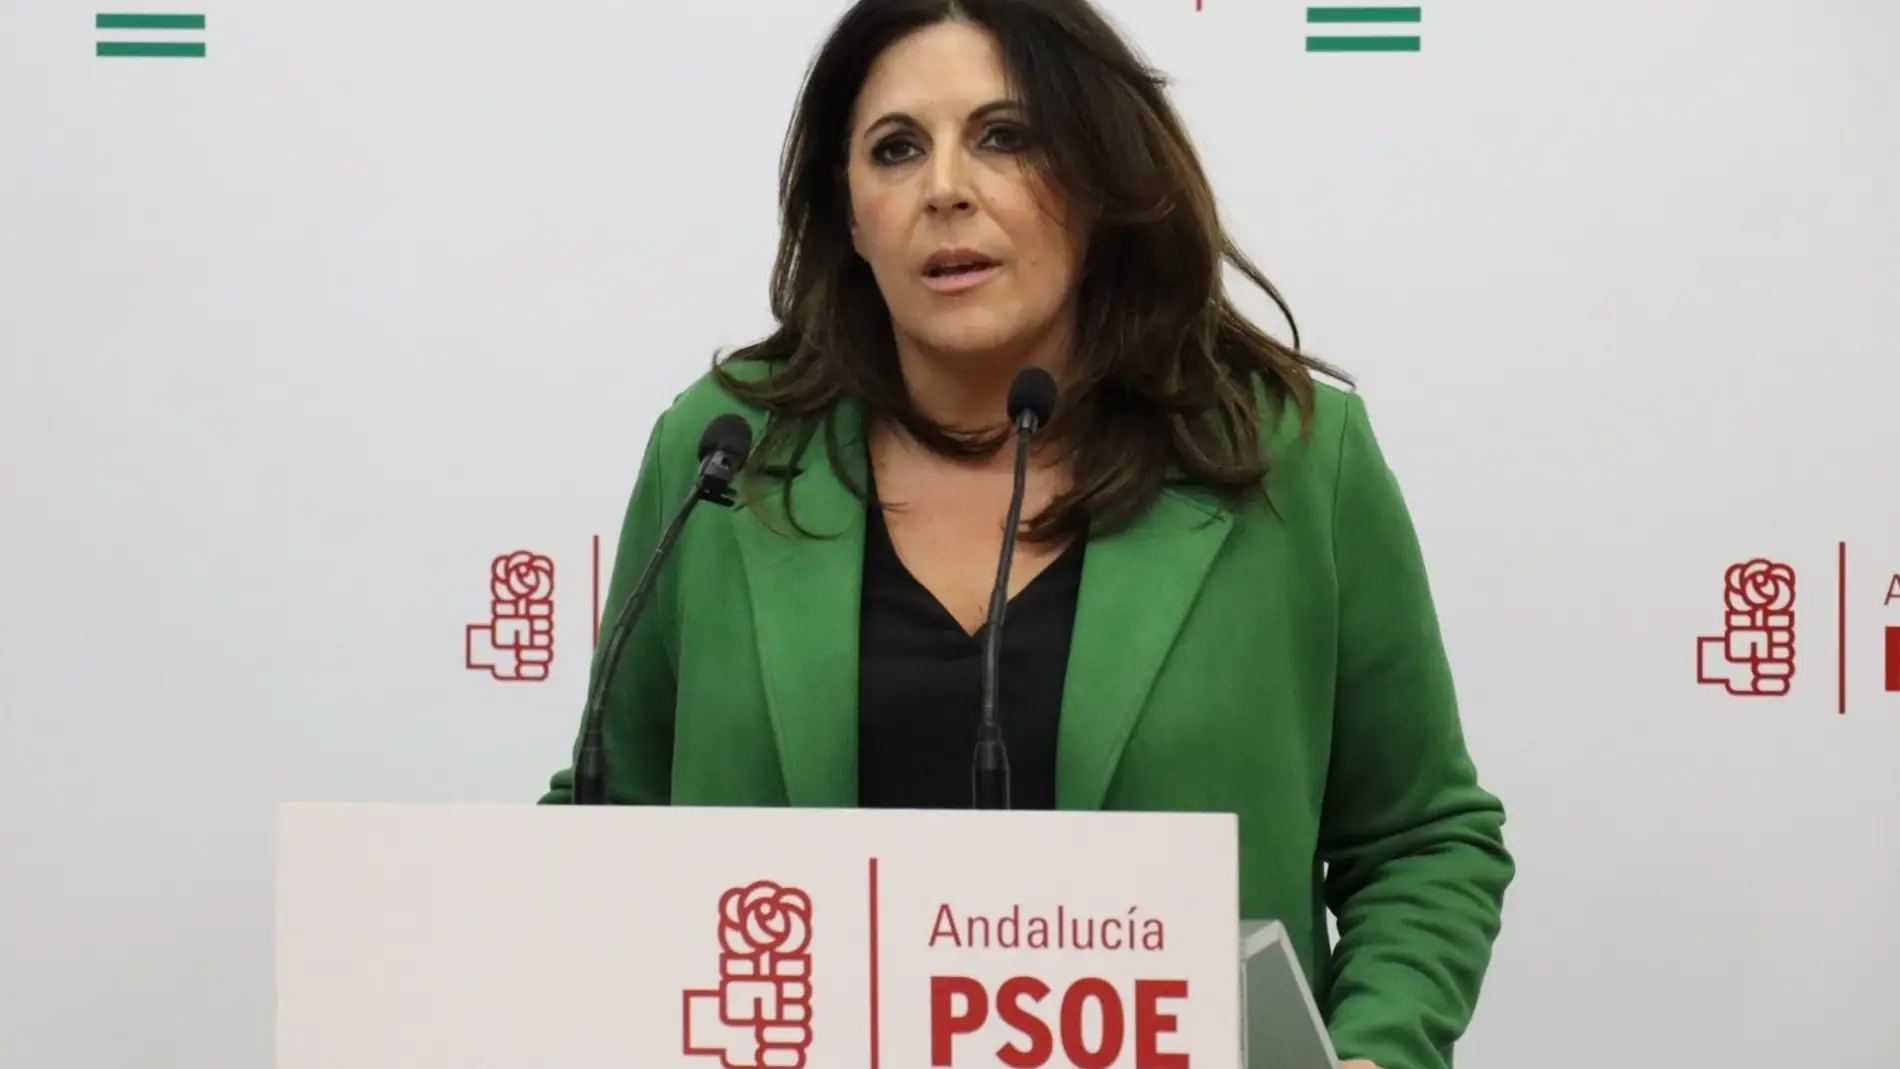 La portavoz socialista en el parlamento andaluz, Ángeles Férriz